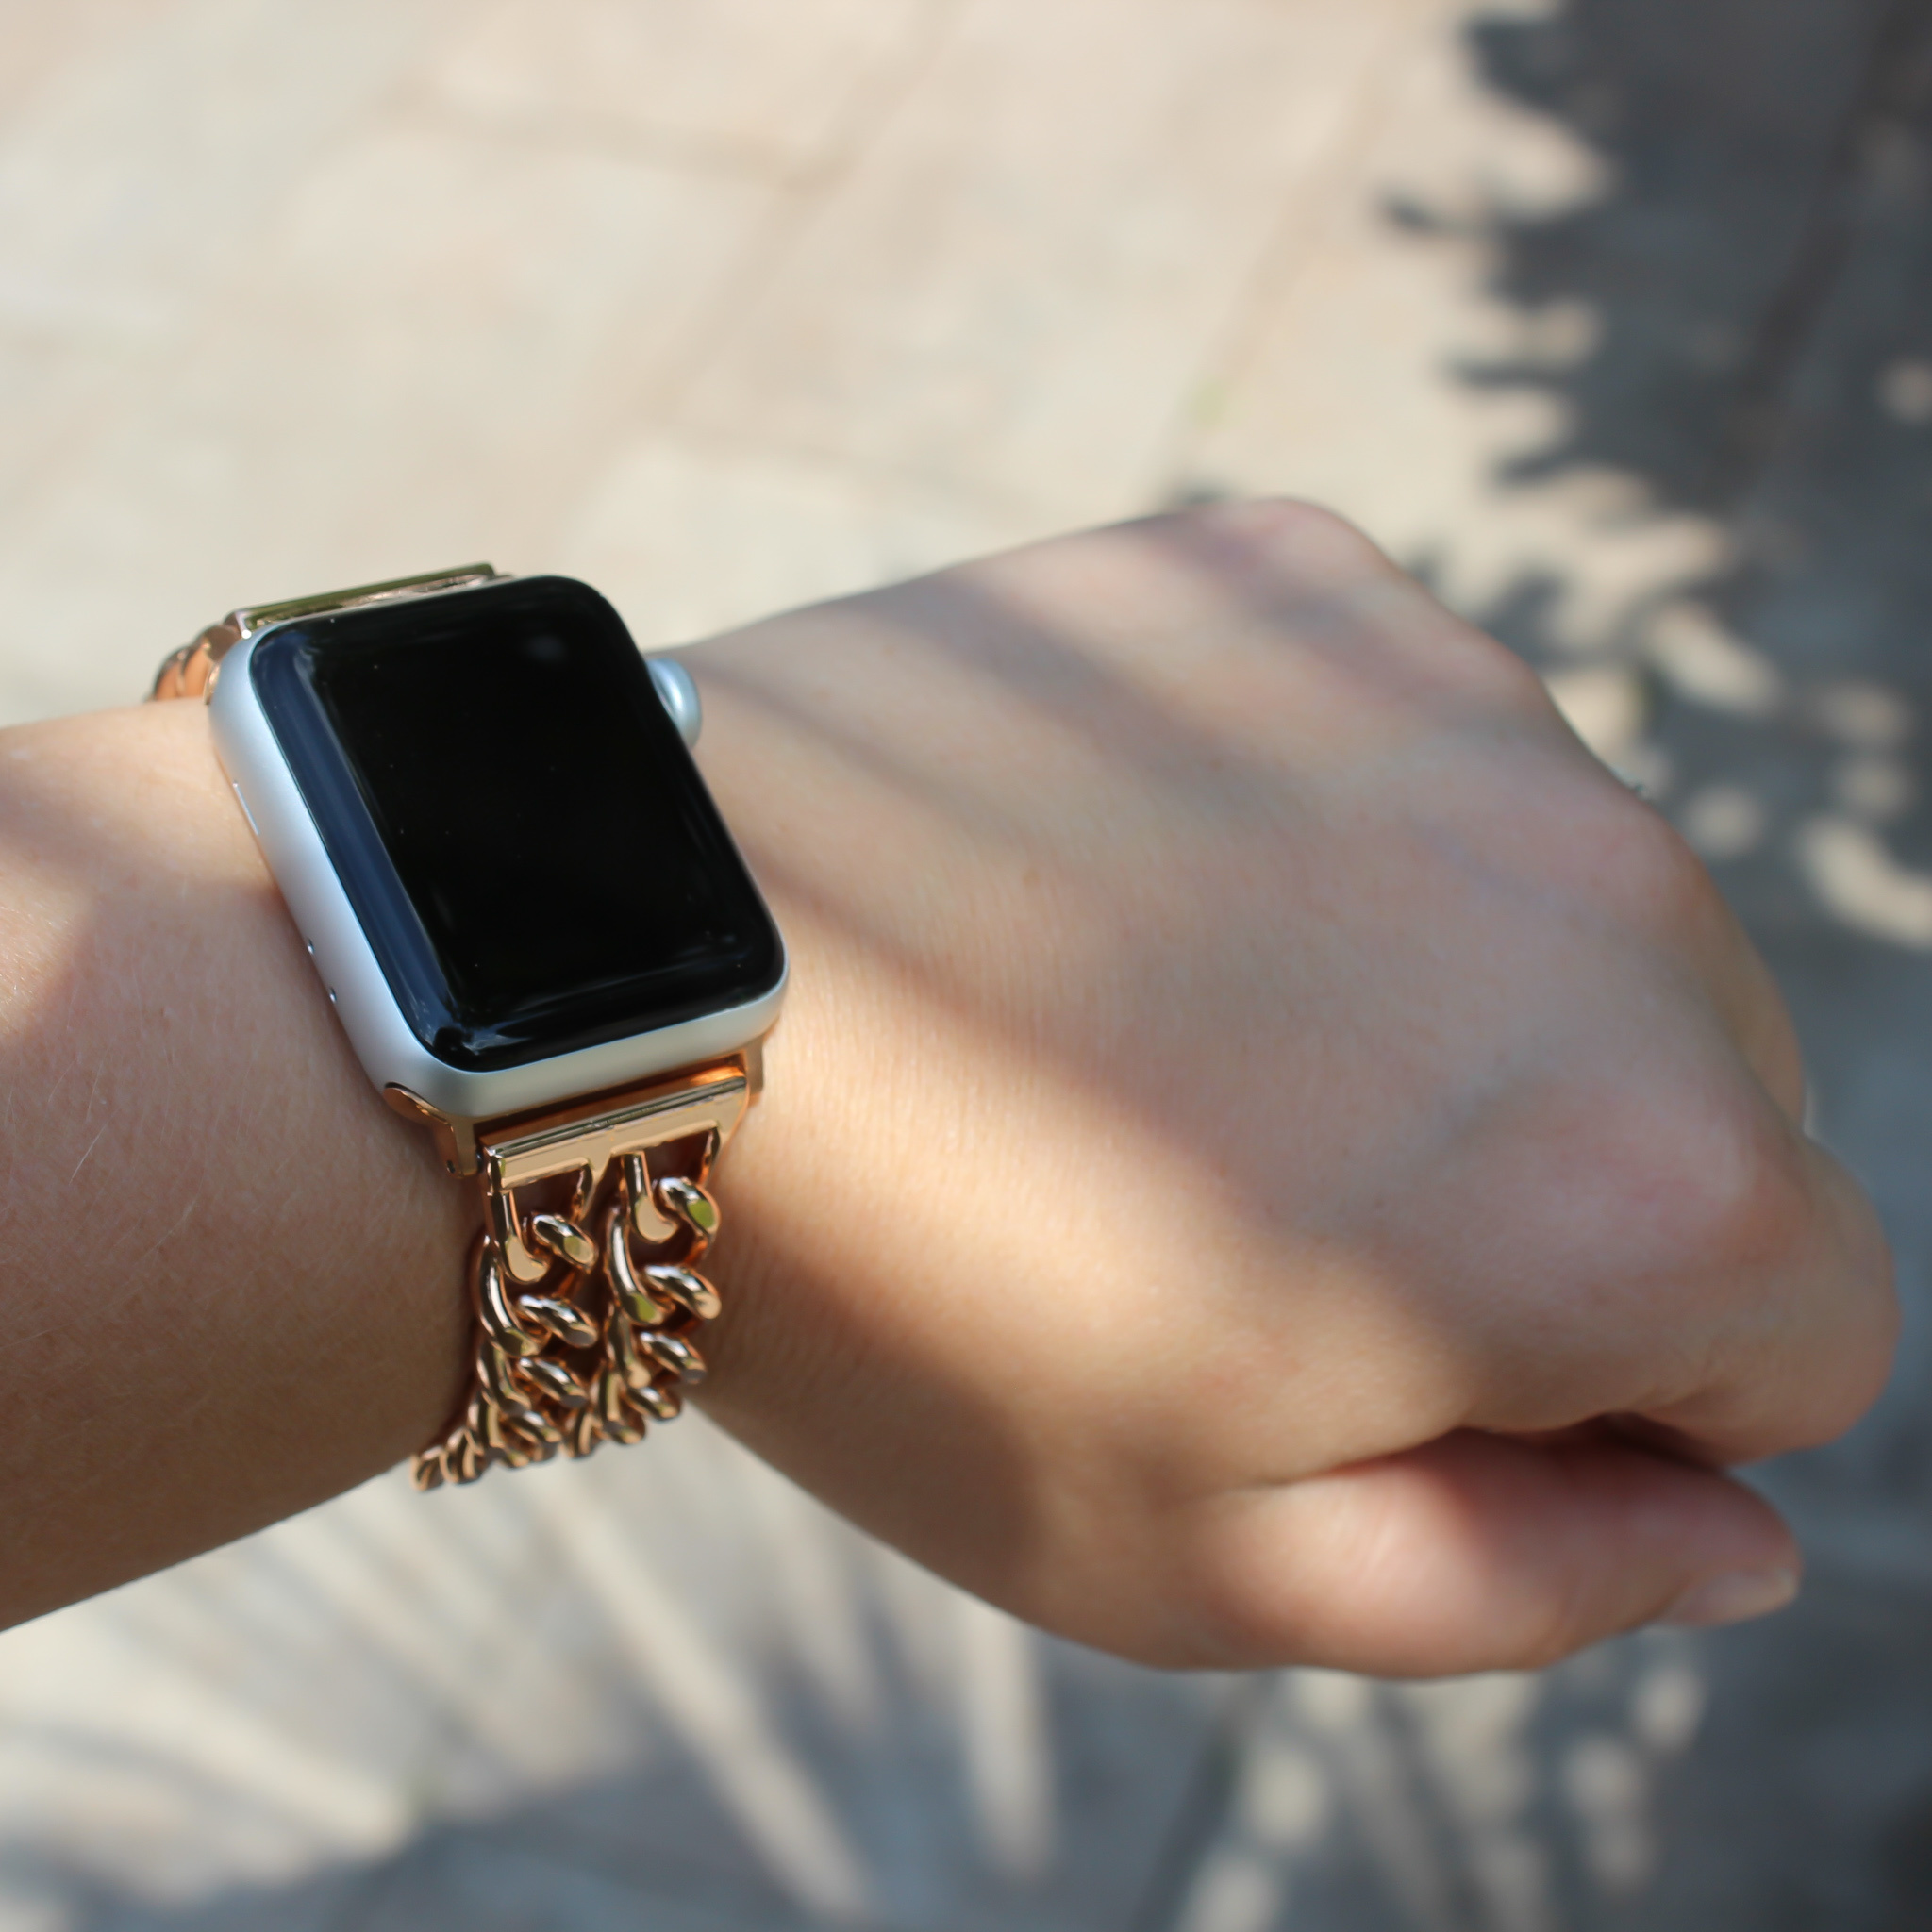 Correa de eslabones de vaquero de acero para el Apple Watch - oro rosa